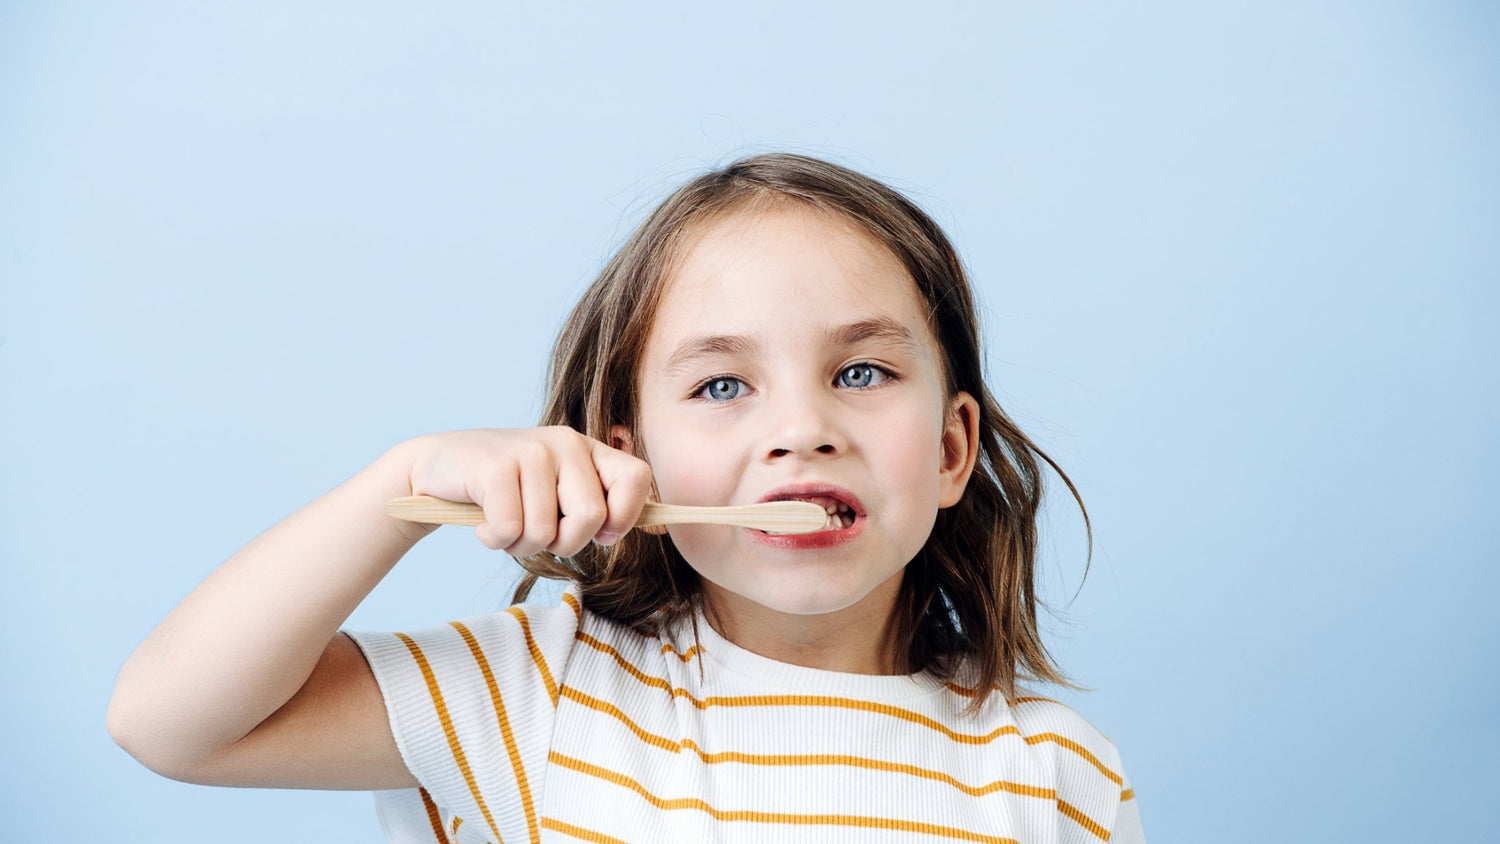 5 tips for Brushing Kids Teeth - truthpaste